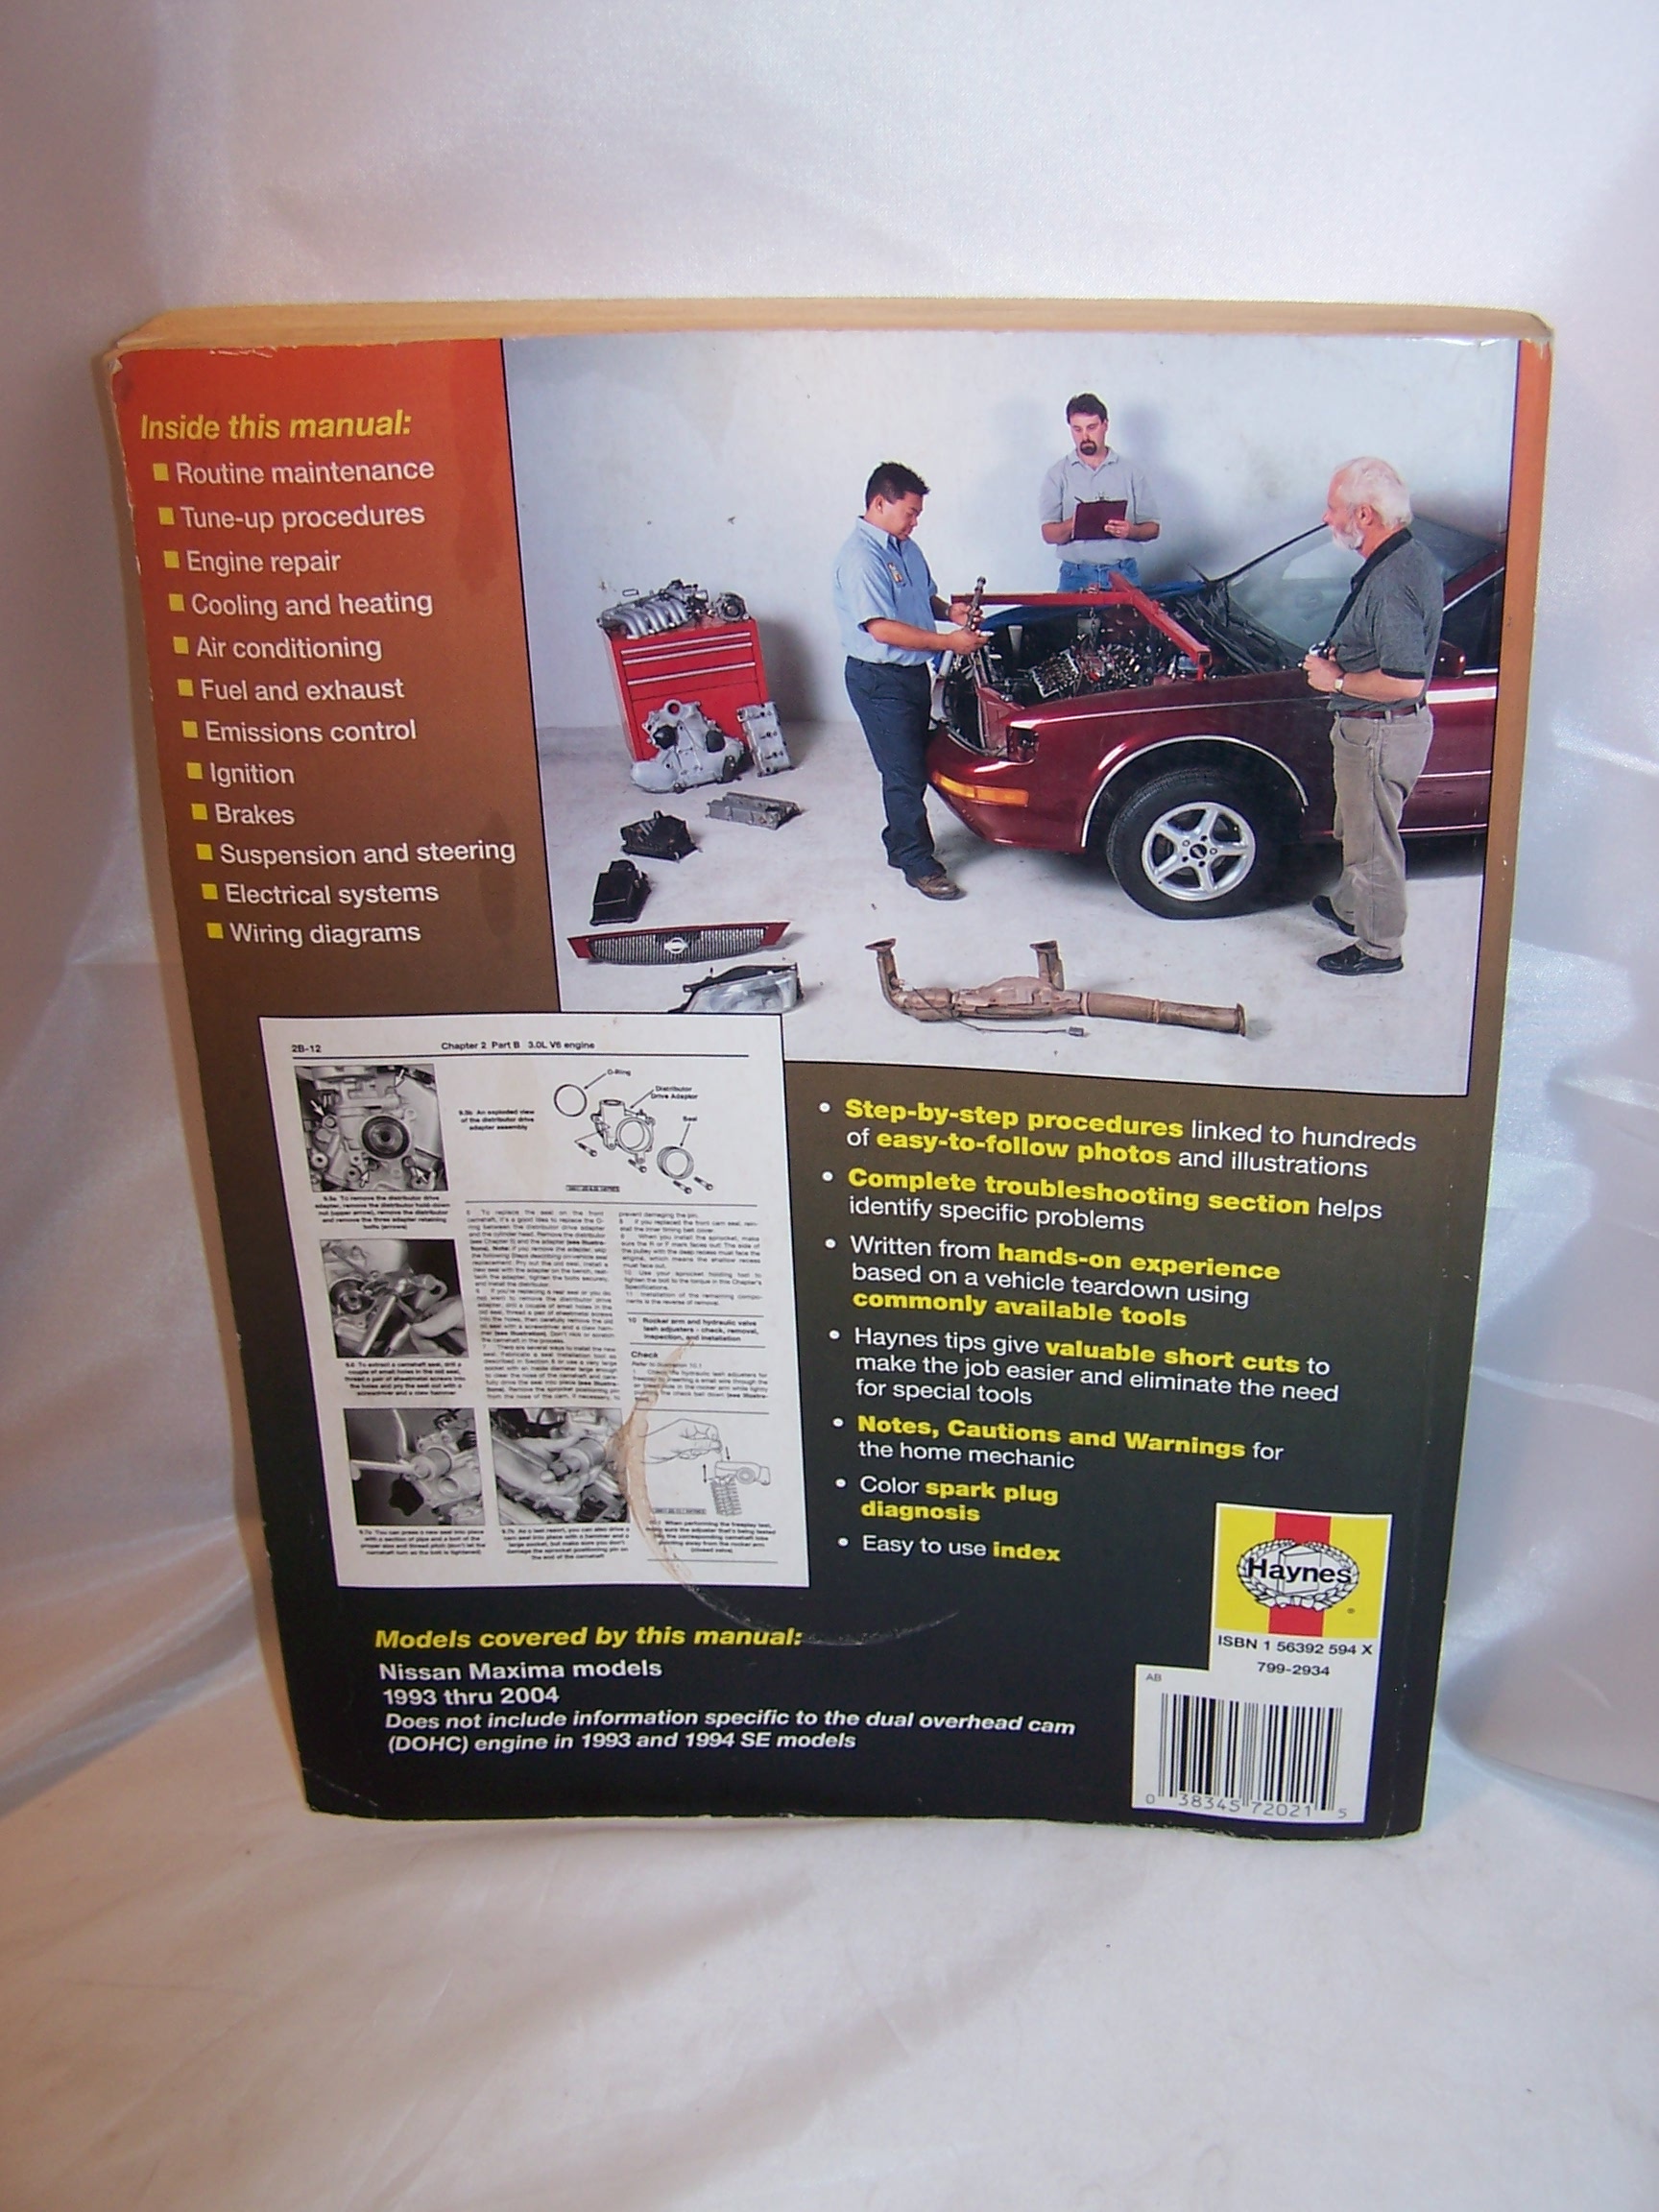 Haynes Nissan Maxima, 1993 to 2004, Repair Manual